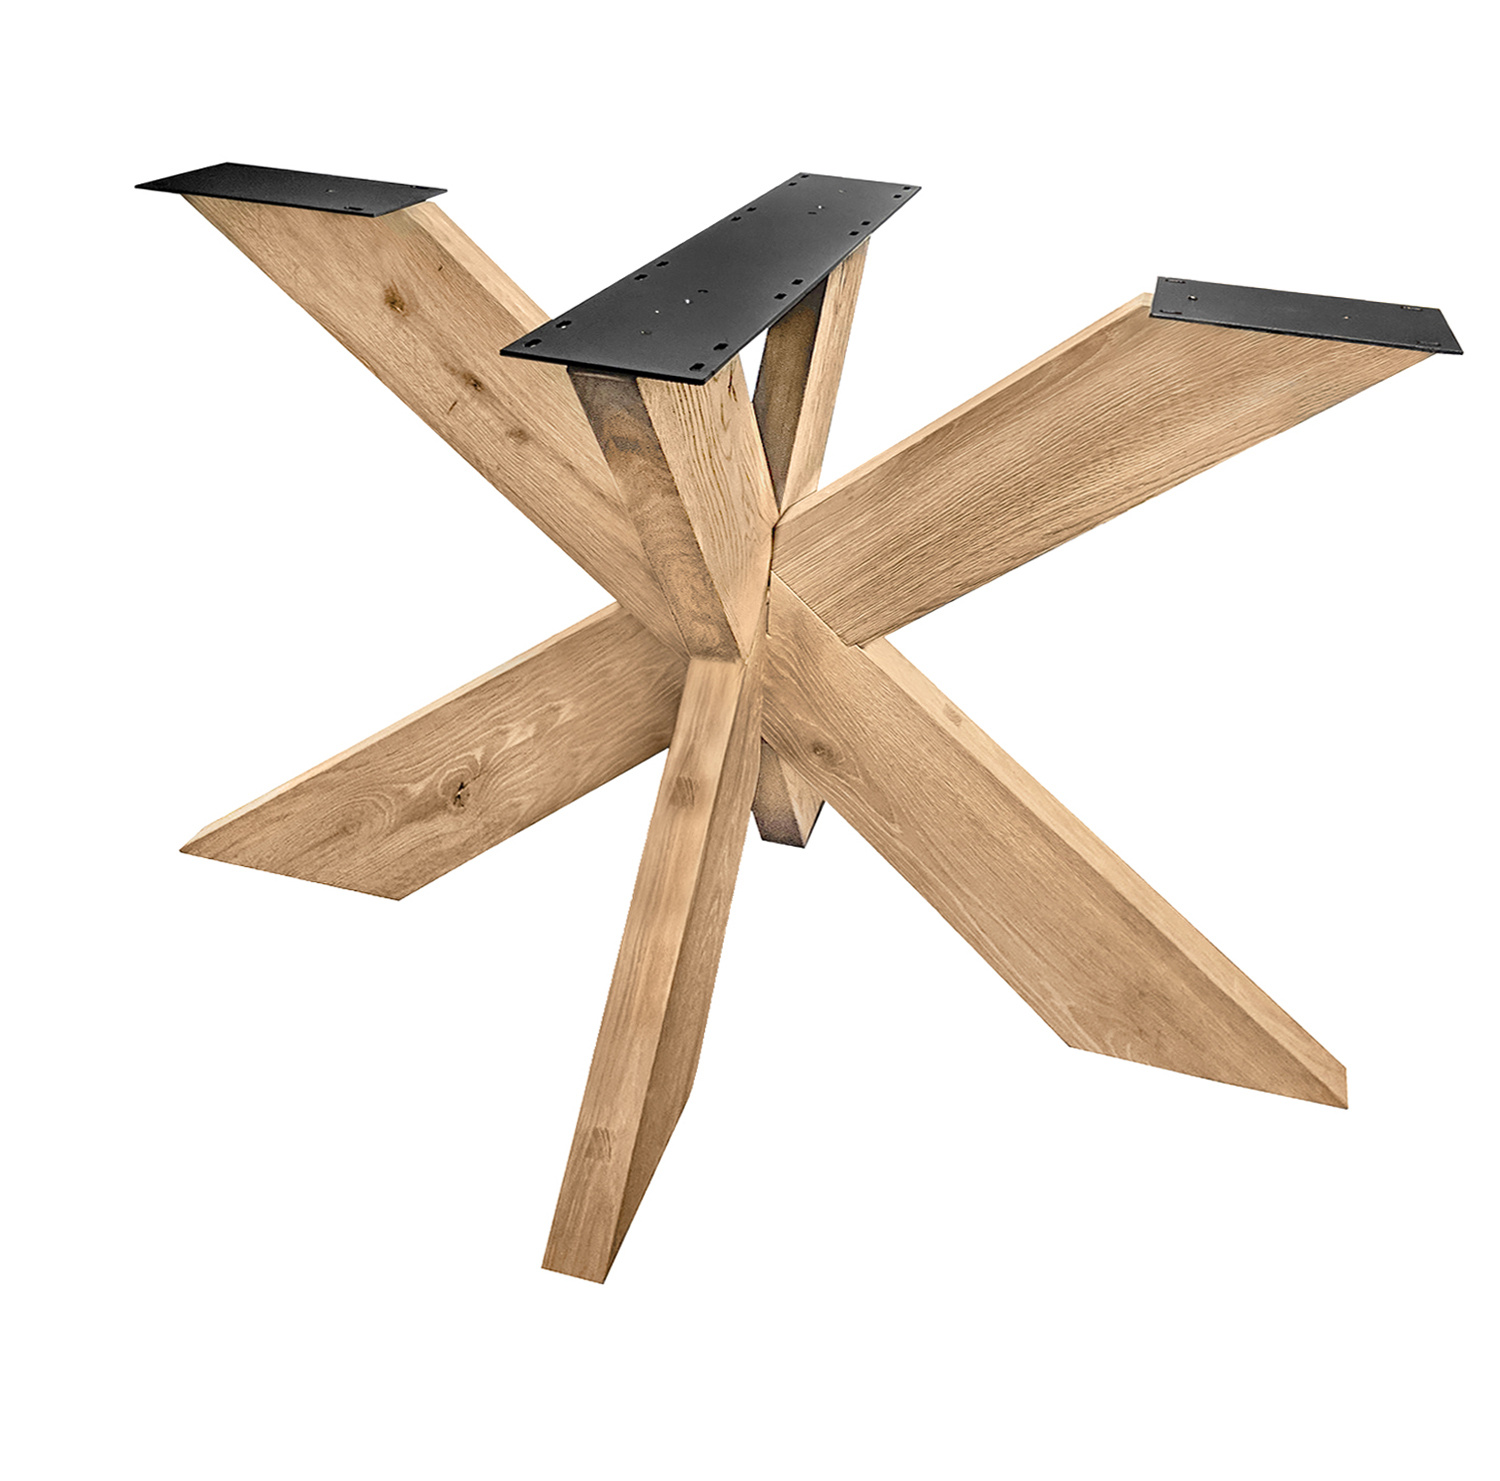  Tischgestell Eiche Spider 6x16 cm - 90x140 cm  - 72 cm hoch - Eichenholz Rustikal - massives Tischunterstell Rechteck, oval & gross rund (Mittelfuß) - Künstlich getrocknet HF 12%